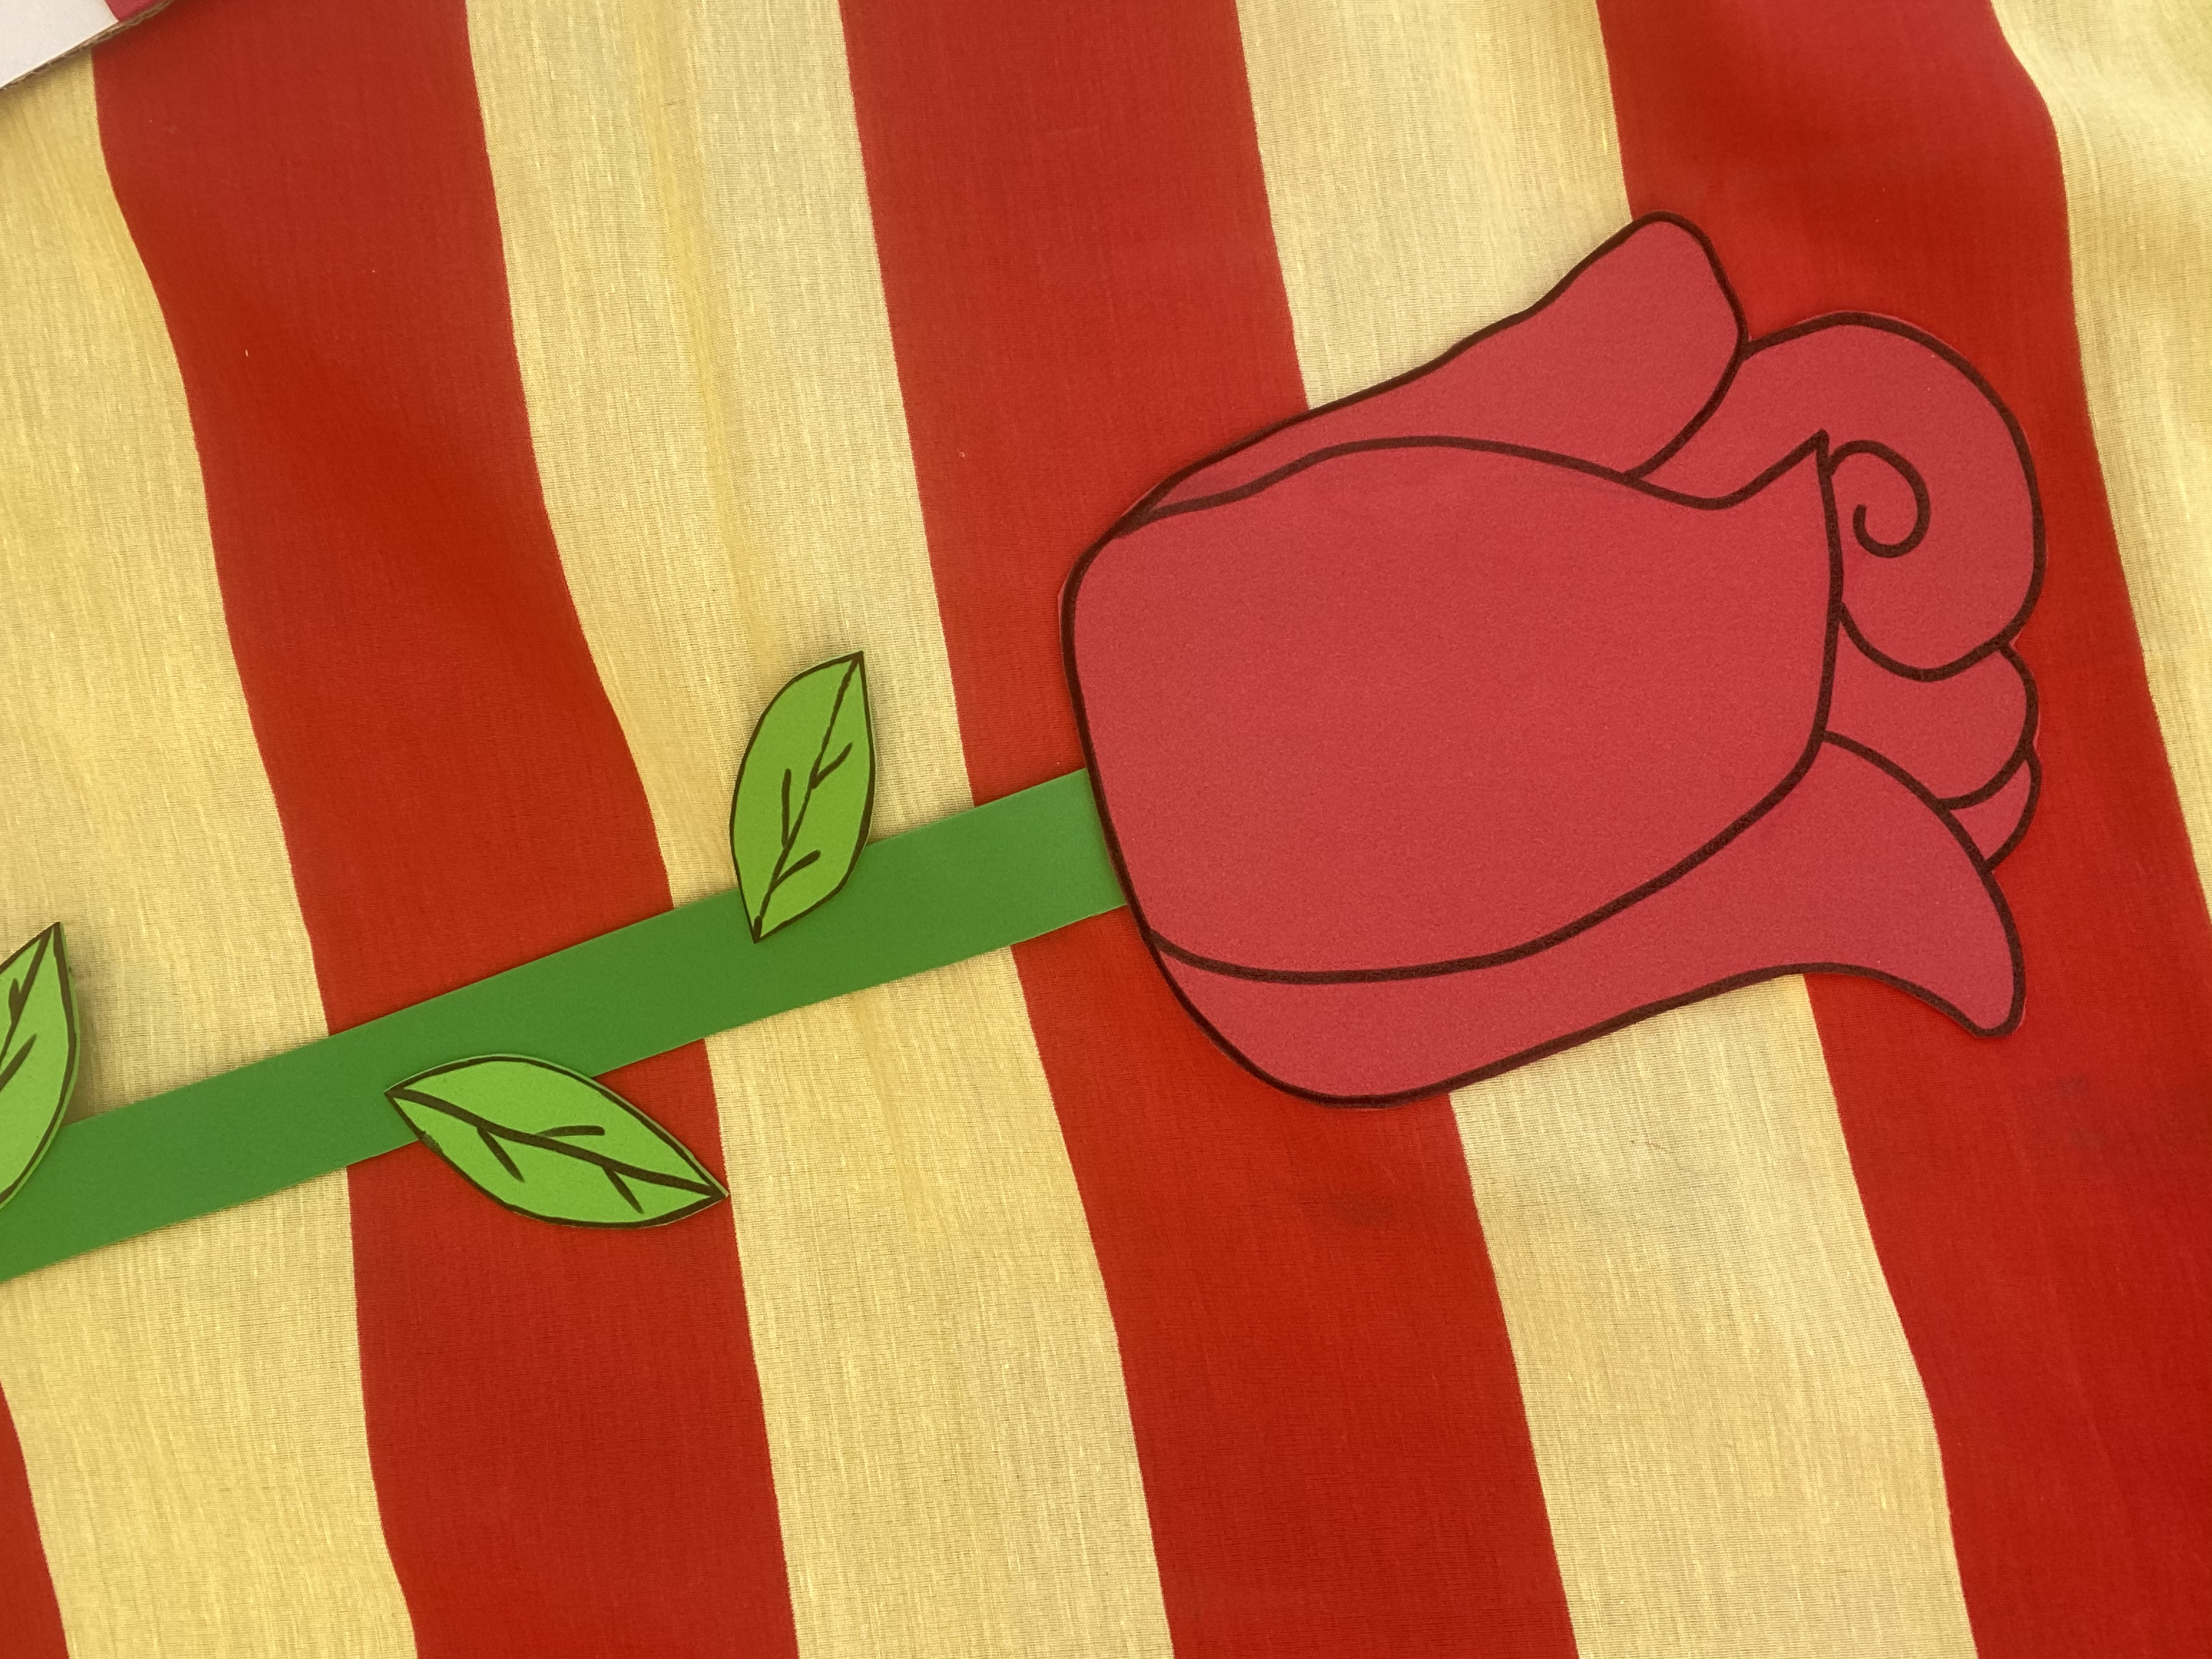 Formulari de participació: Regala una rosa!